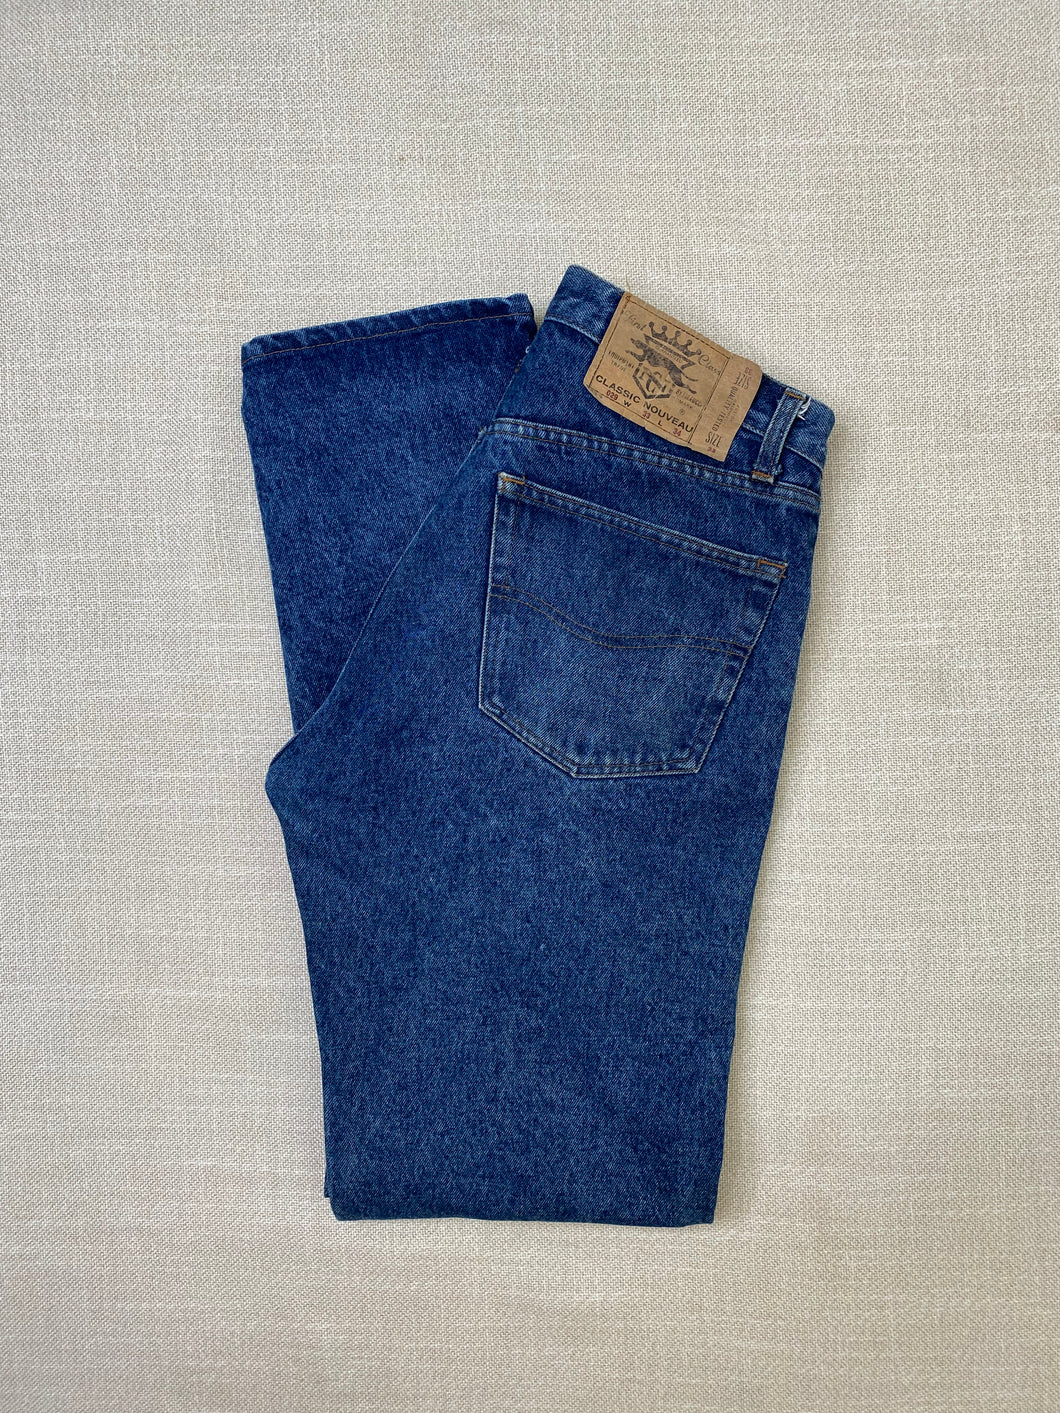 1980s Classic Nouveau jeans